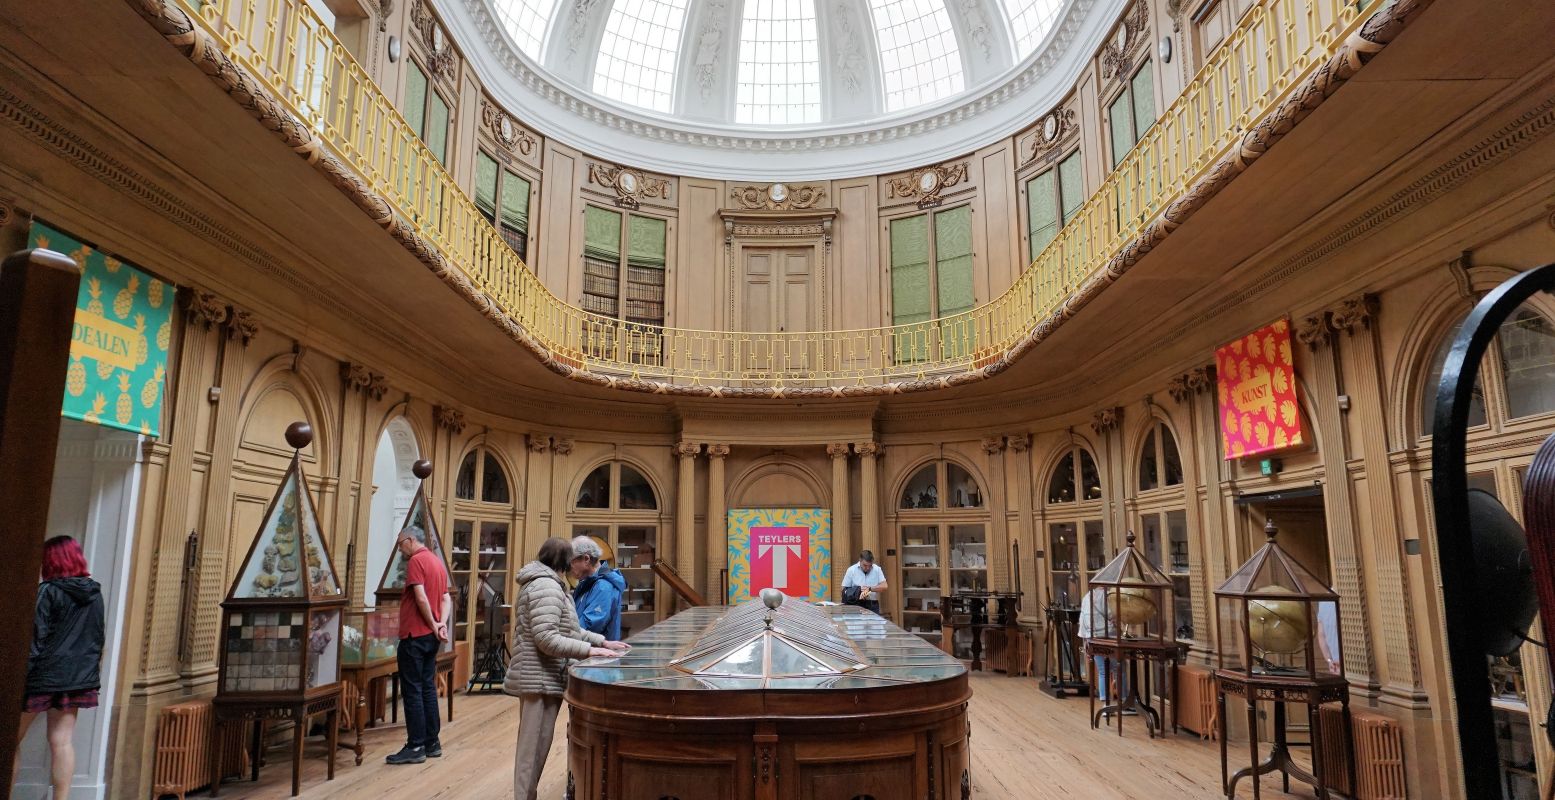 De prachtige Ovale Zaal, de start van het museum. Bovenin is de bibliotheek vol historische werken. Foto: DagjeWeg.NL © Tonny van Oosten